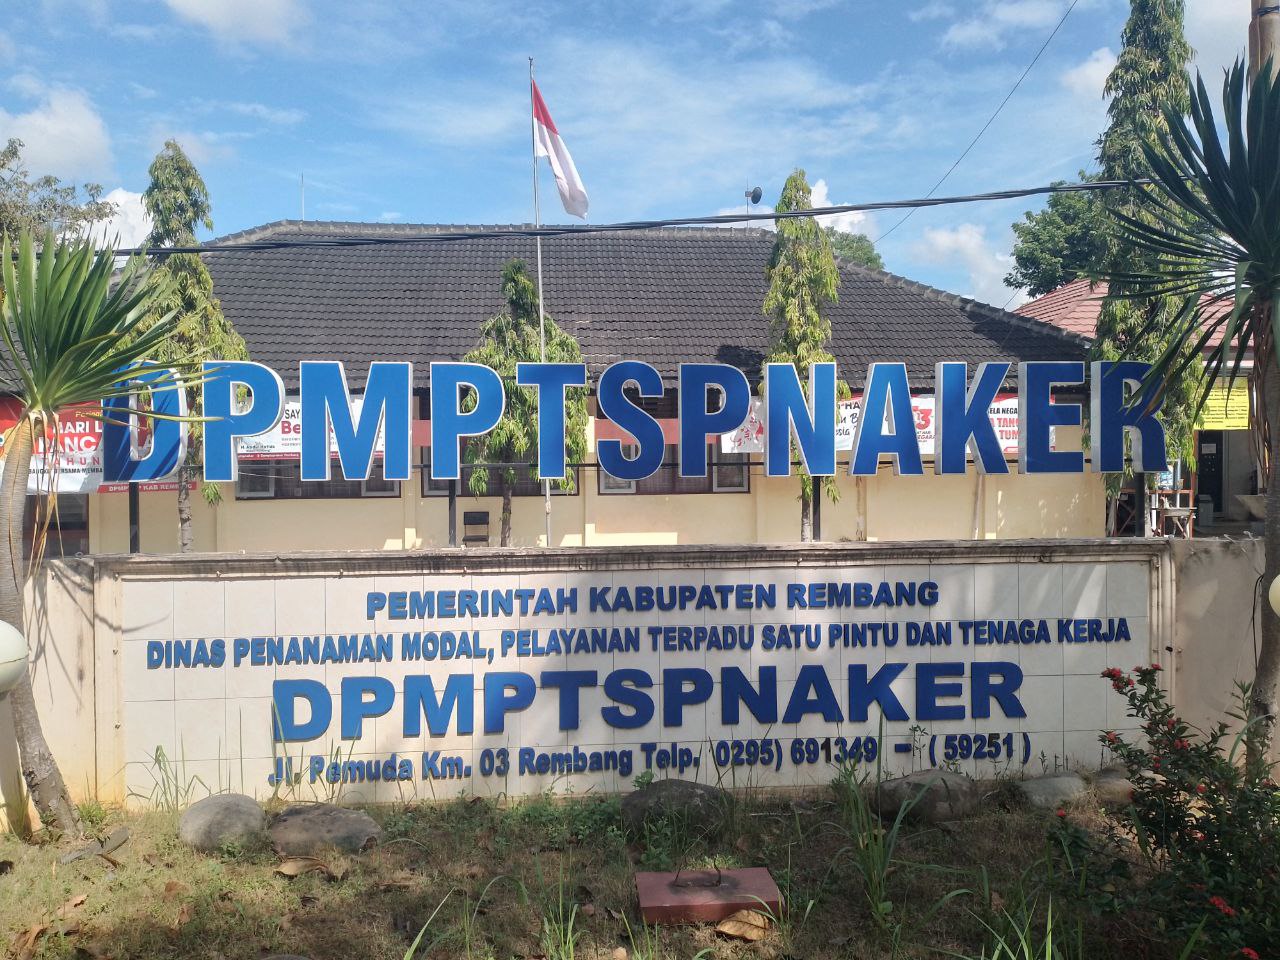 DPMPTSP Rembang Canangkan Zona Integritas yang Sehat dan Bebas Korupsi